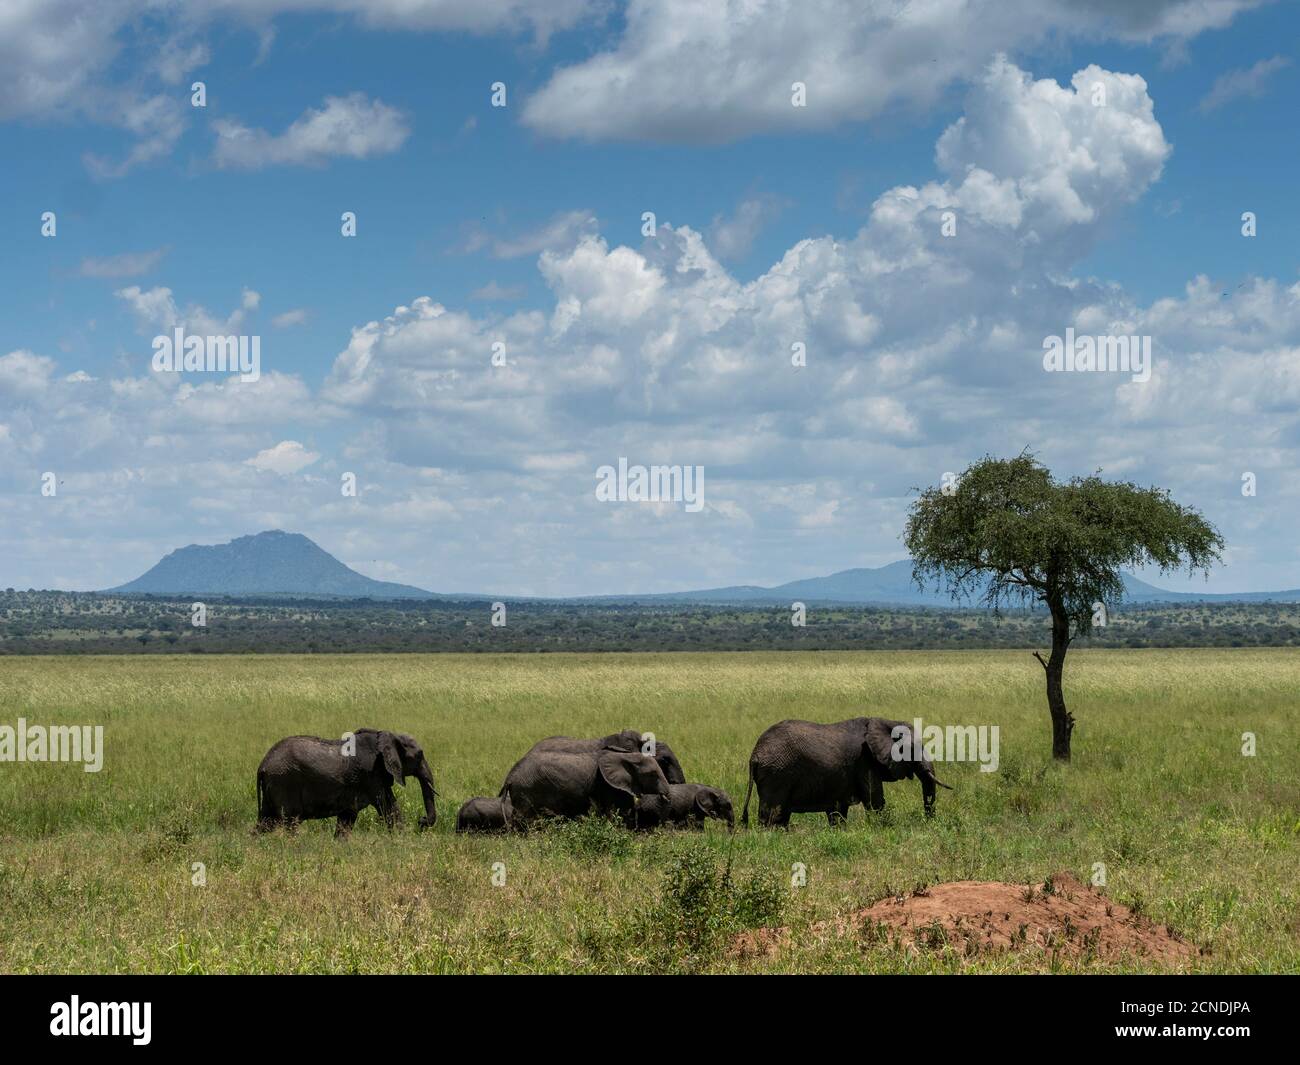 Un troupeau d'éléphants de brousse africains (Loxodonta africana), Parc national de Tarangire, Tanzanie, Afrique de l'est, Afrique Banque D'Images